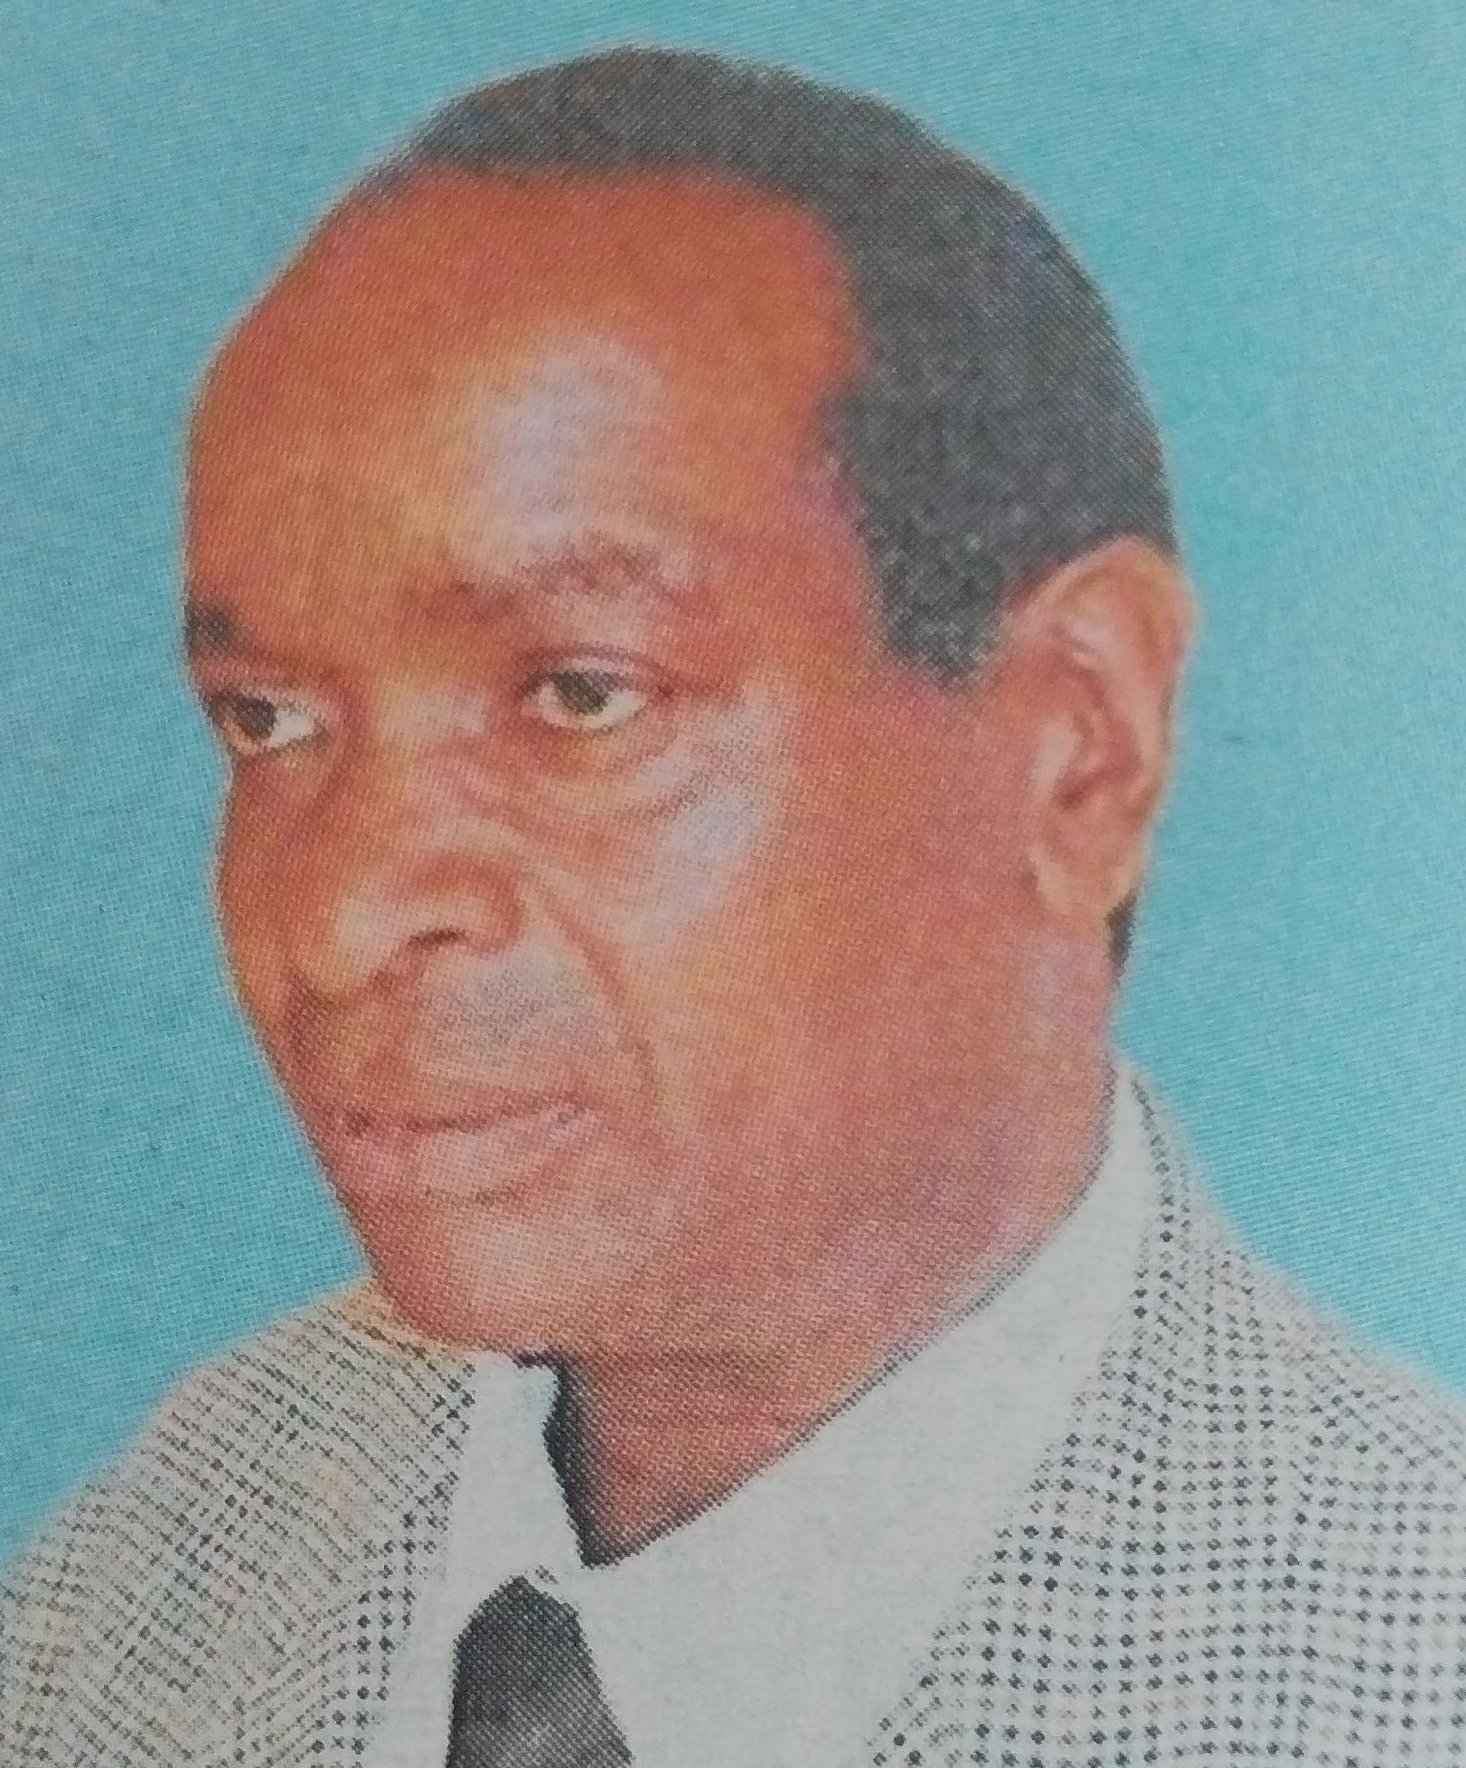 Obituary Image of Charles Nyakundi Oginda